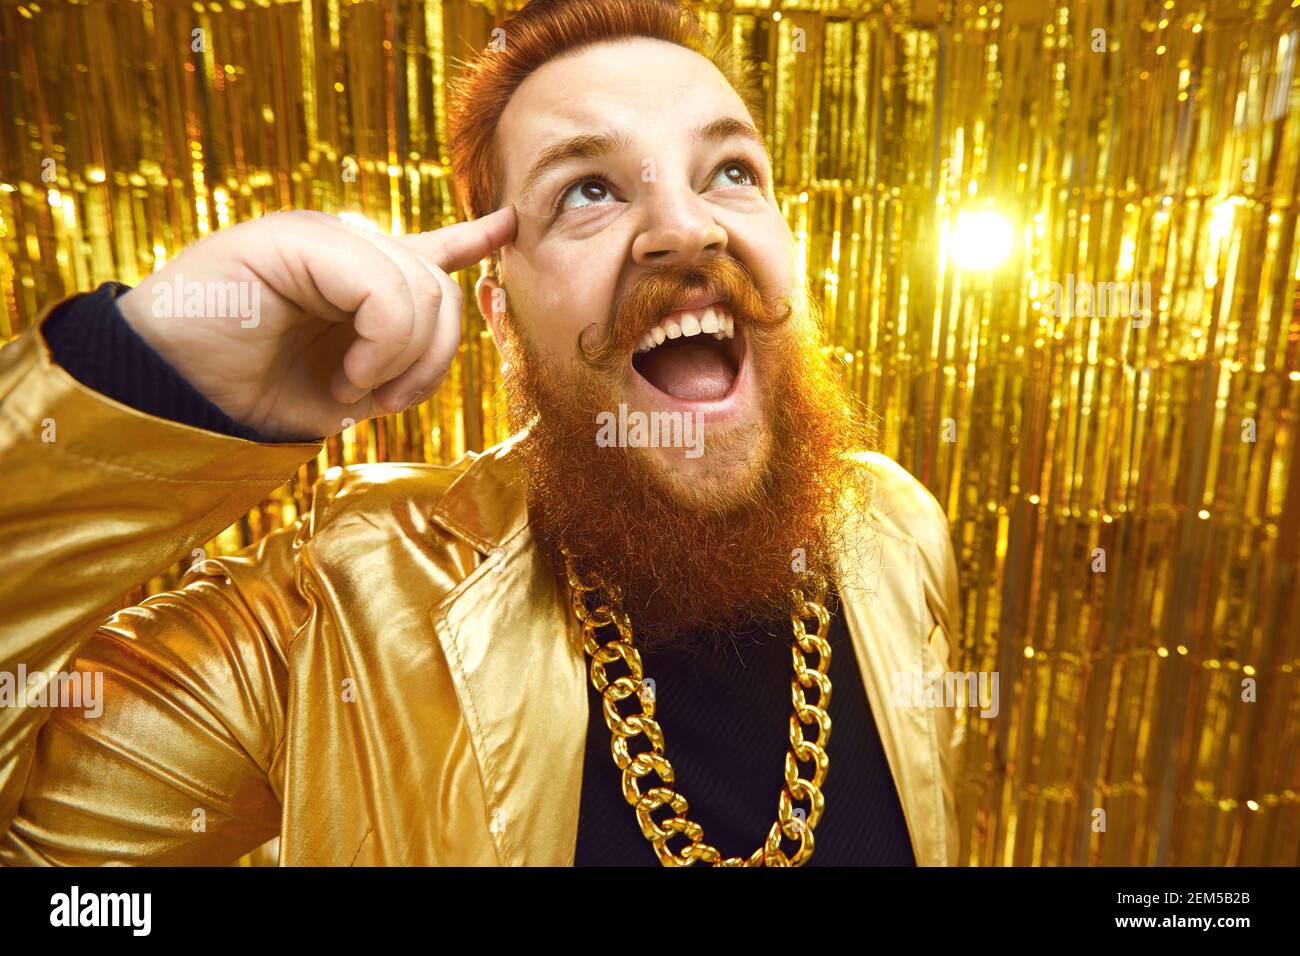 Homme barbu plein d'enthousiasme avec une tenue extravagante et un collier  en chaîne doré s'amuser à une fête Photo Stock - Alamy